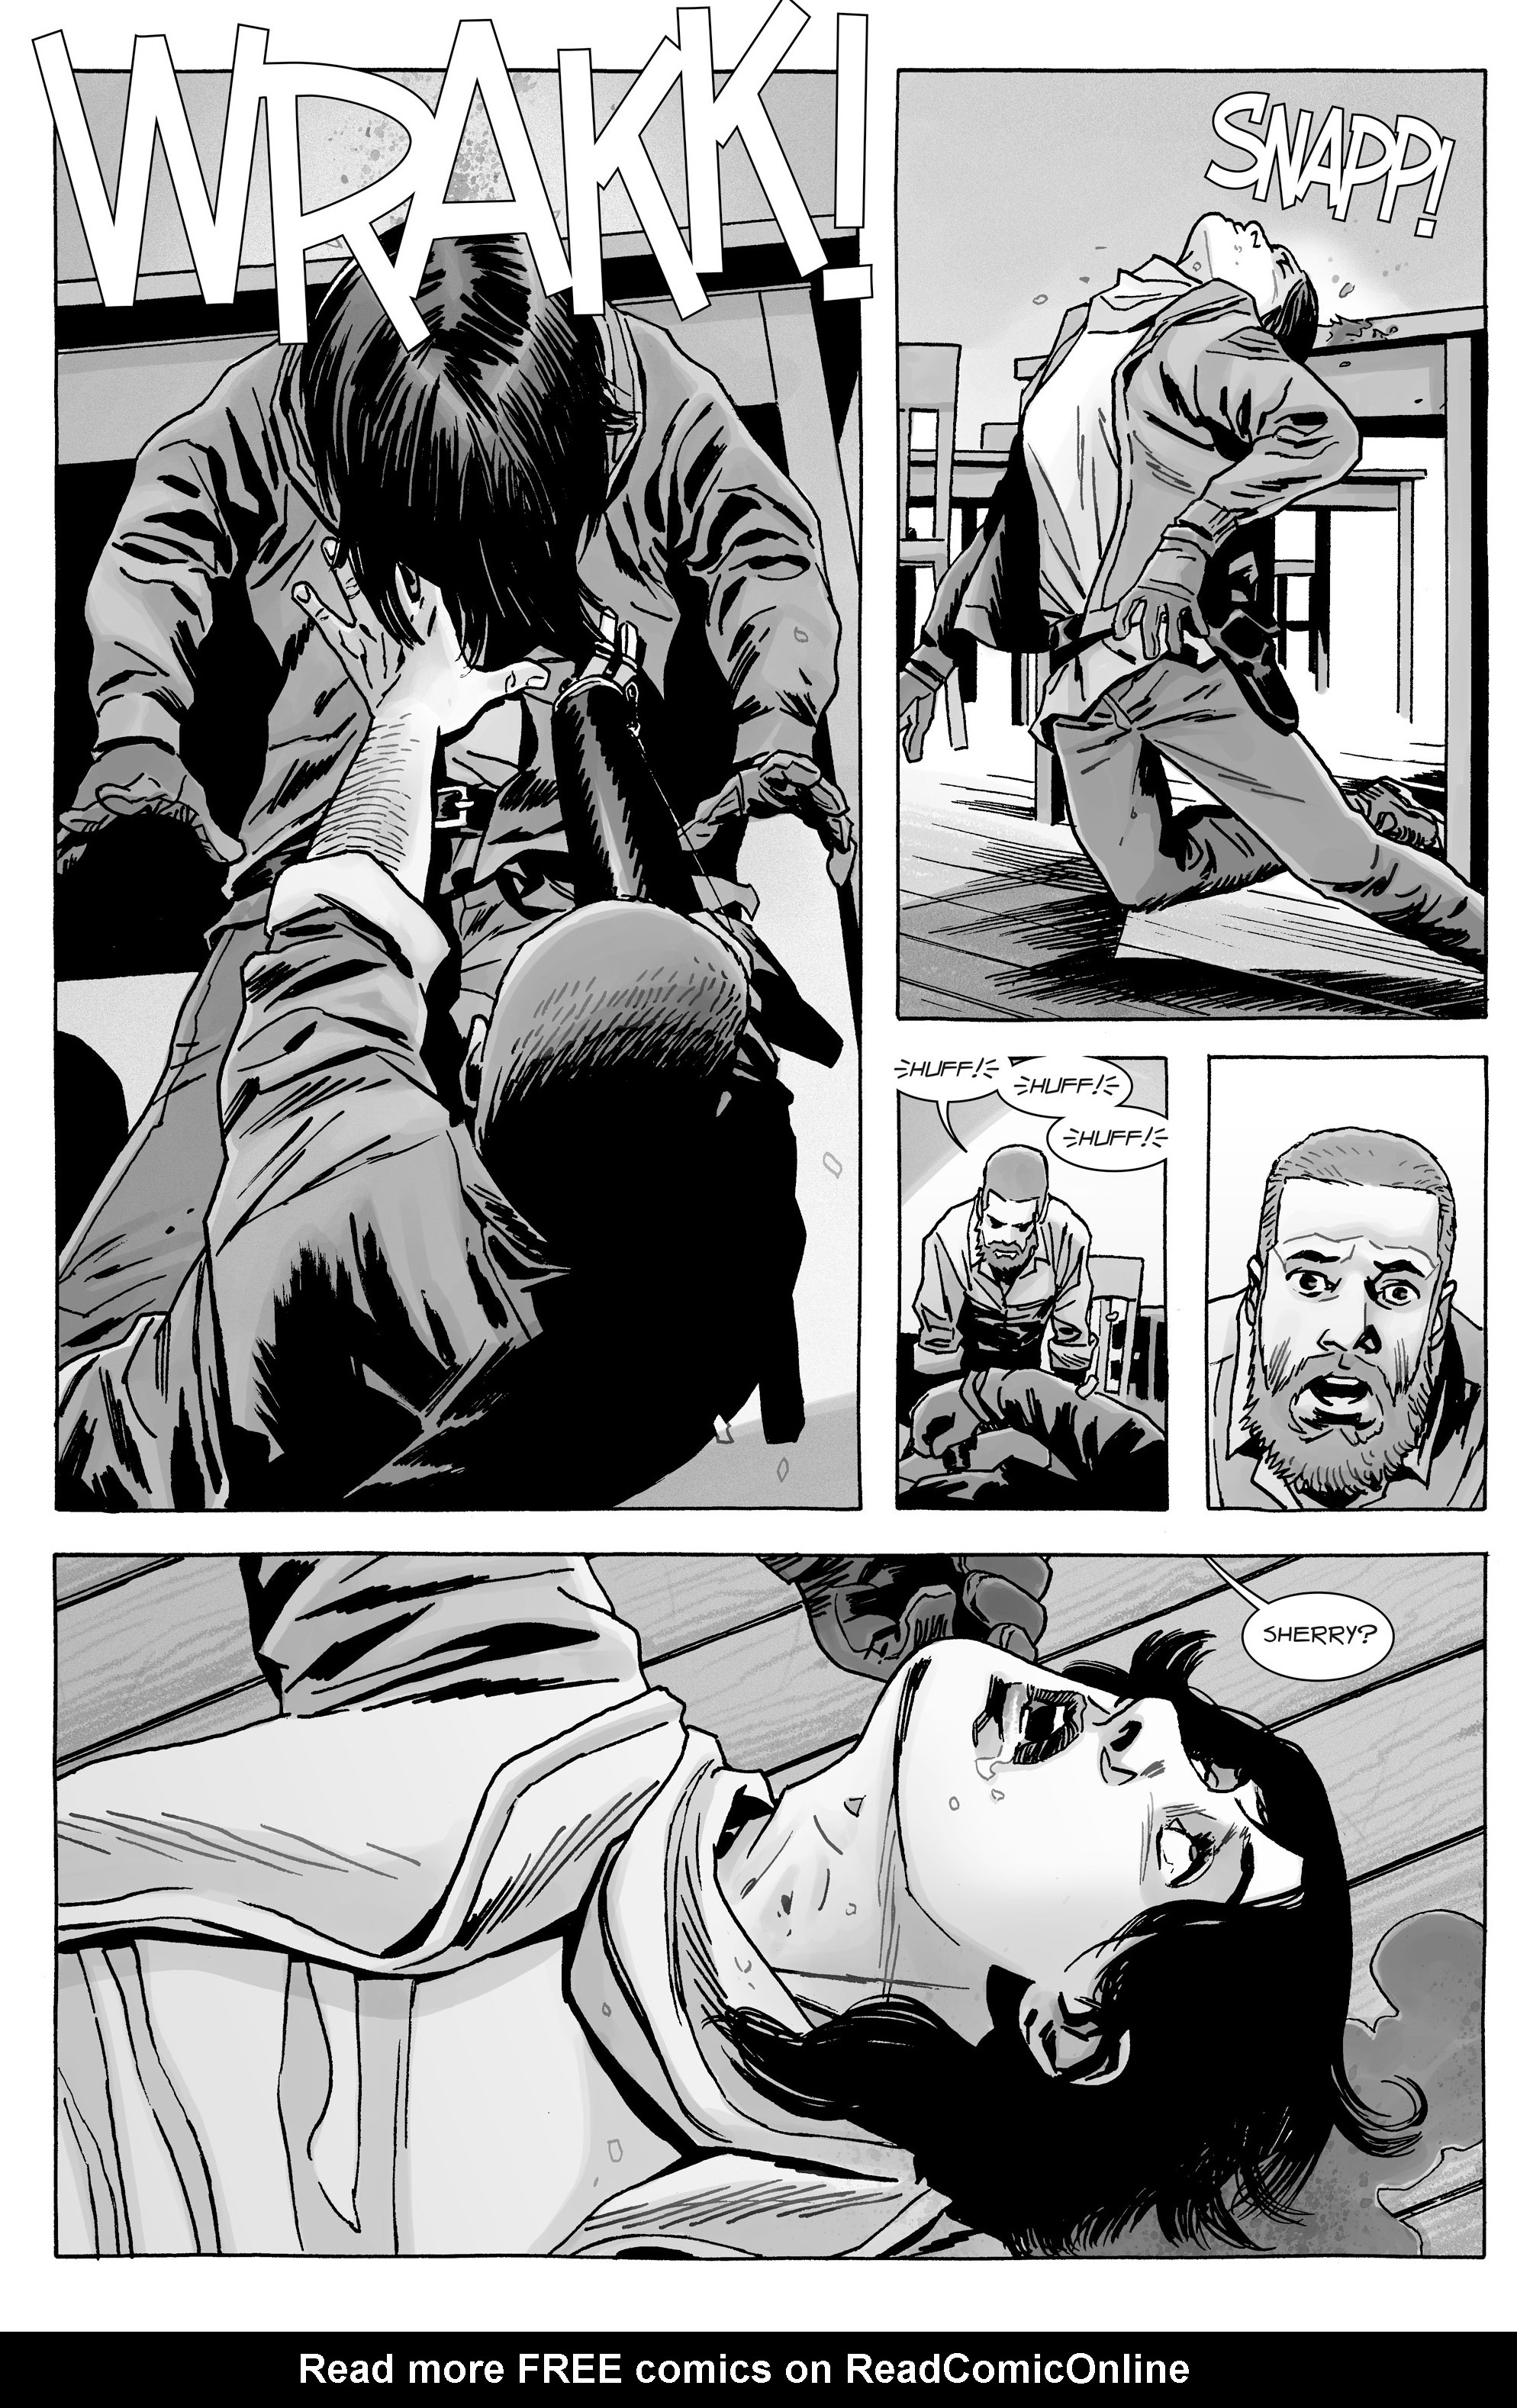 Read online The Walking Dead comic -  Issue #166 - 20